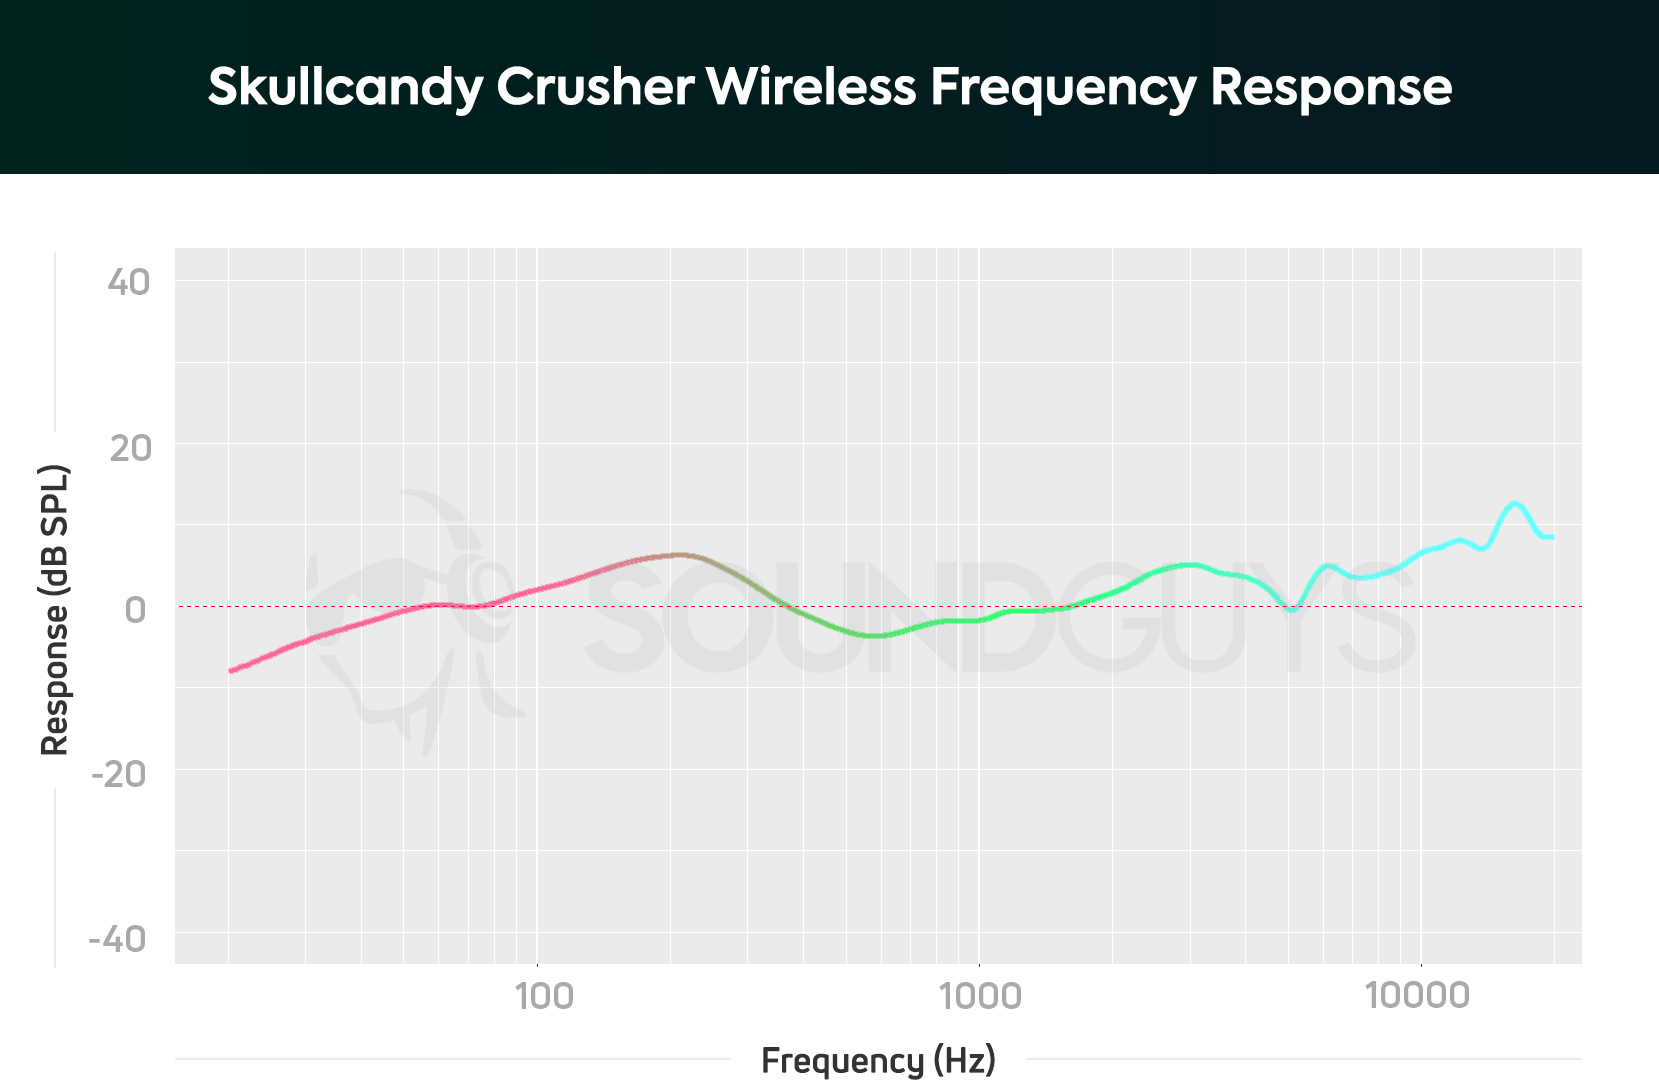 Frekvensrespons fra Skullcandy Crusher Wireless